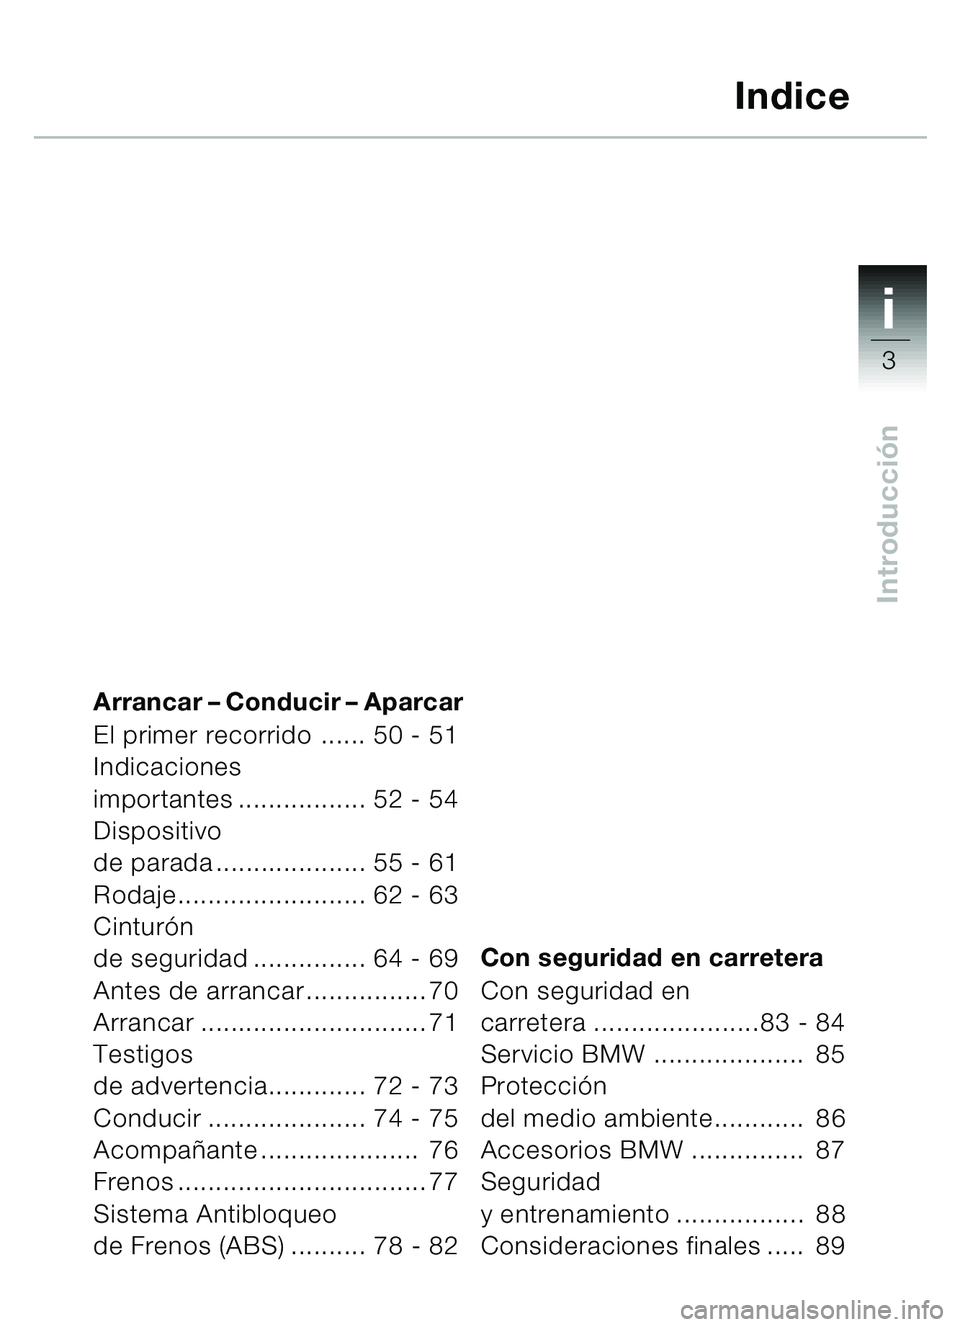 BMW MOTORRAD C1 2000  Manual de instrucciones (in Spanish) 1i
3
Introducción
Arrancar  – Conducir –  Aparcar
El primer recorrido ...... 50 - 51
Indicaciones 
importantes ................. 52 - 54
Dispositivo 
de parada .................... 55 - 61
Rodaje